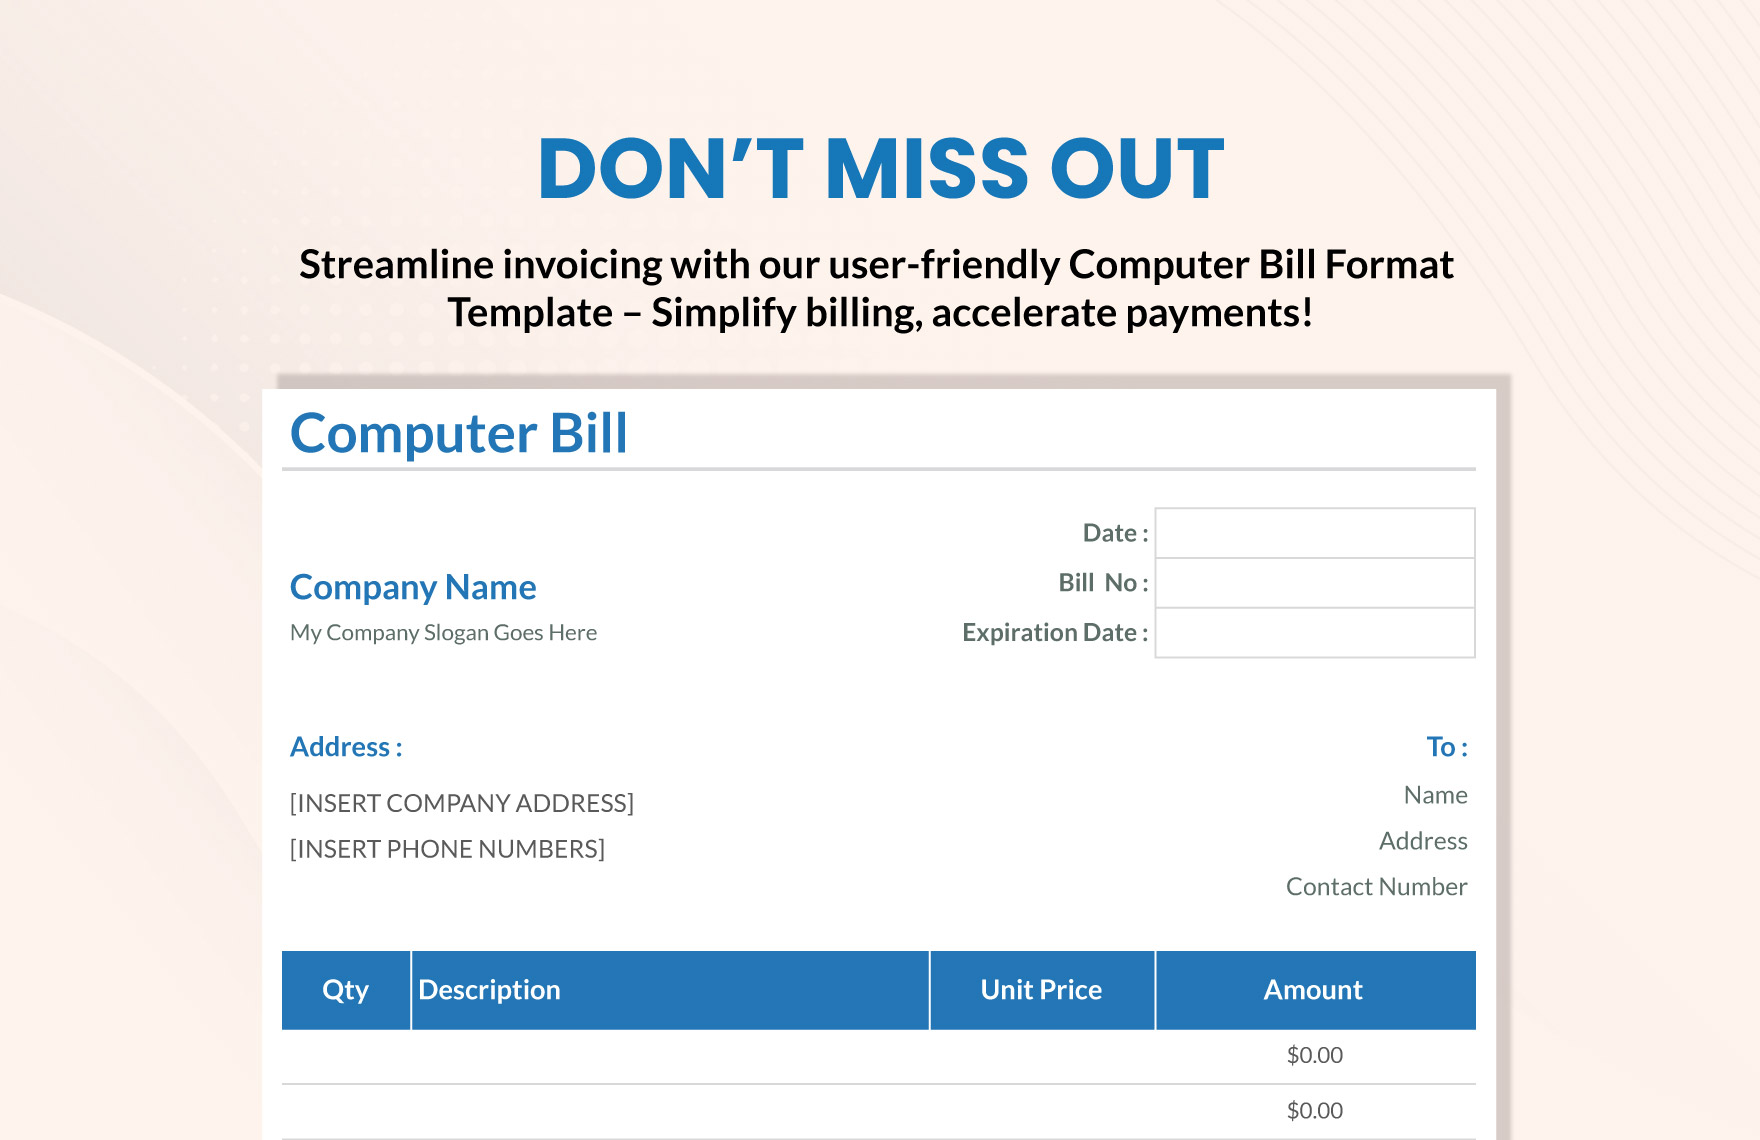 Computer Bill Format Template